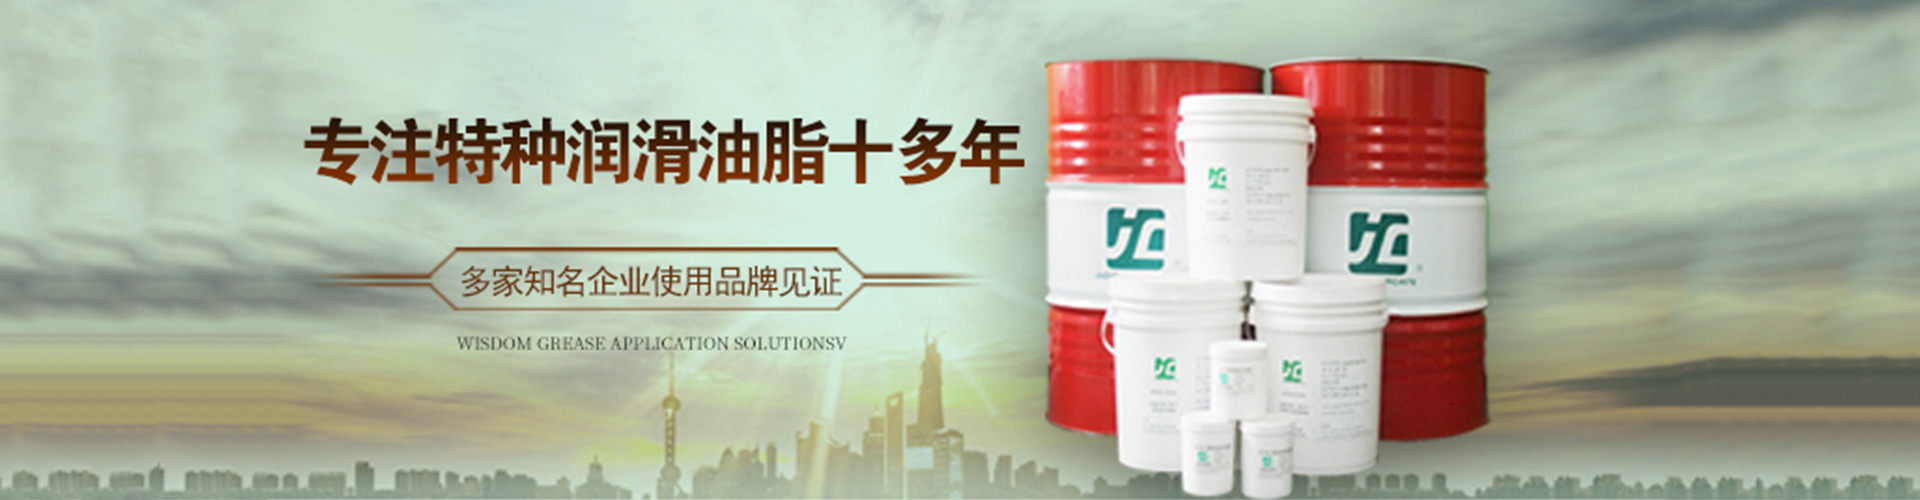 南京市品牌厂家JC玖城低噪音齿轮脂  智慧油脂